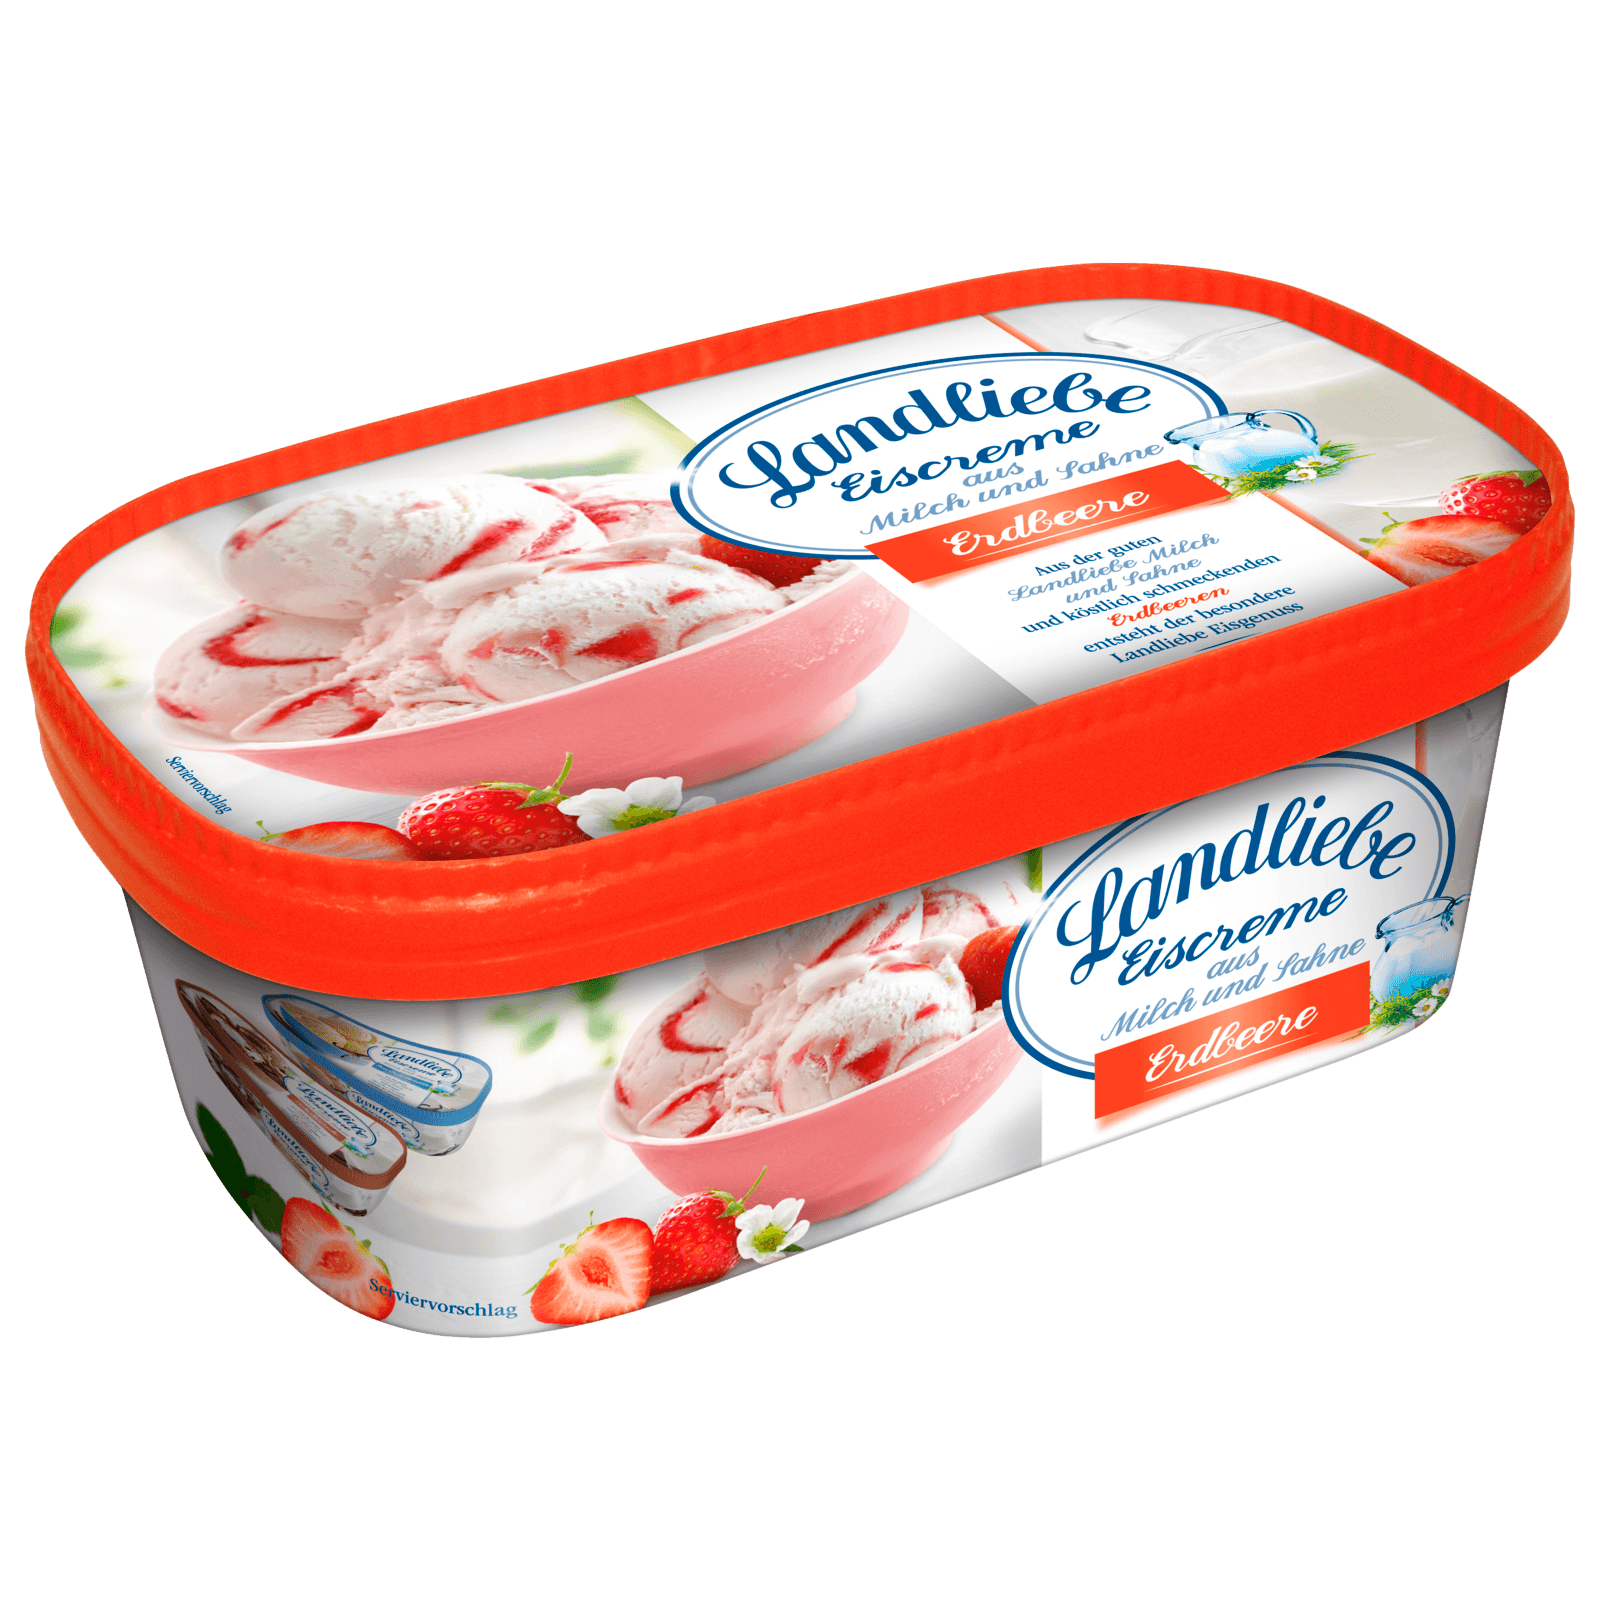 Landliebe Eiscreme Erdbeere 750ml bei REWE online bestellen!